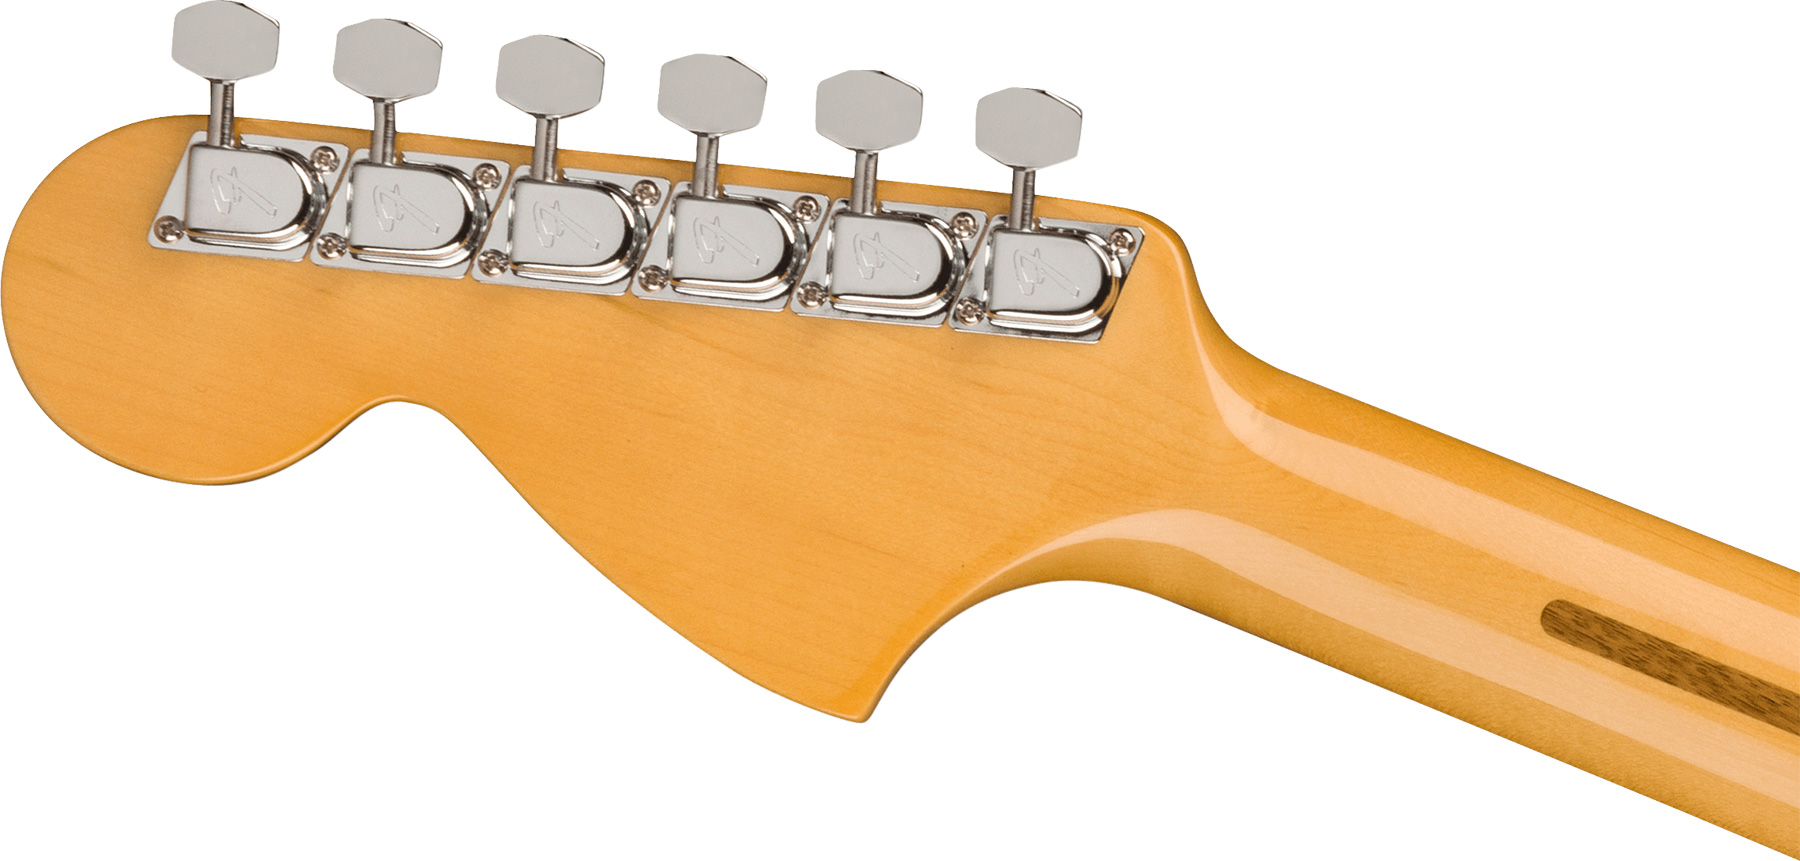 Fender Strat 1973 American Vintage Ii Usa 3s Trem Rw - Aged Natural - Str shape electric guitar - Variation 3